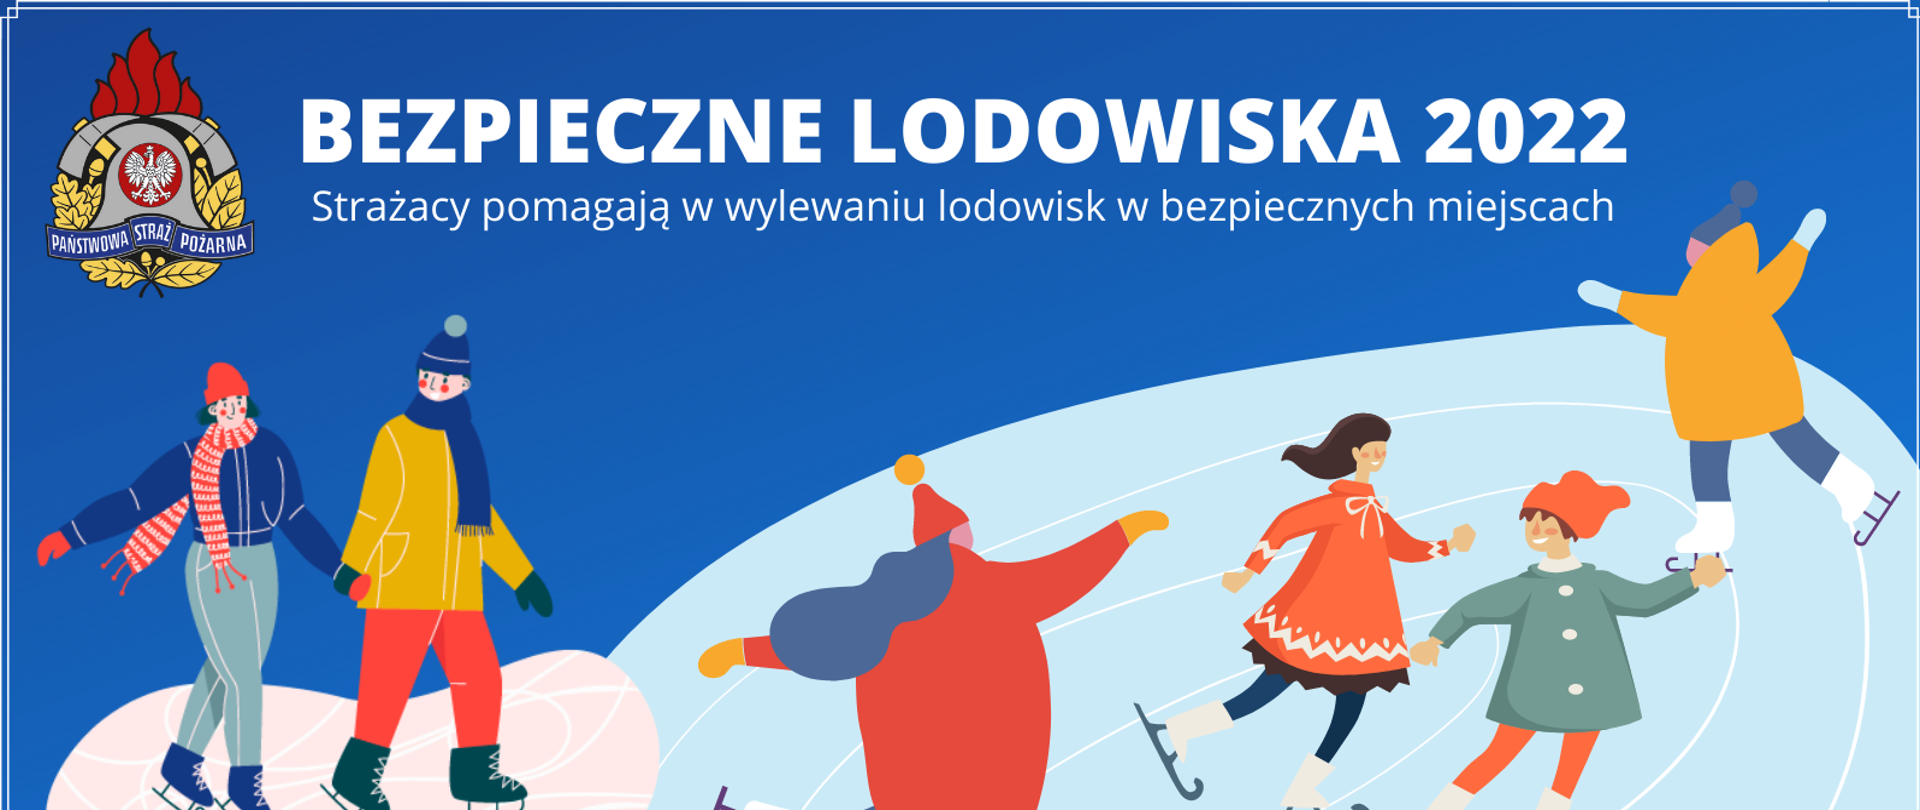 Grafika. Na niebieskim tle widoczne kolorowe postacie ludzi w zimowych ubraniach jeżdżących na łyżwach. Po lewej stronie u góry widoczne logo PSP. U góry napis Bezpieczne lodowiska 2022 